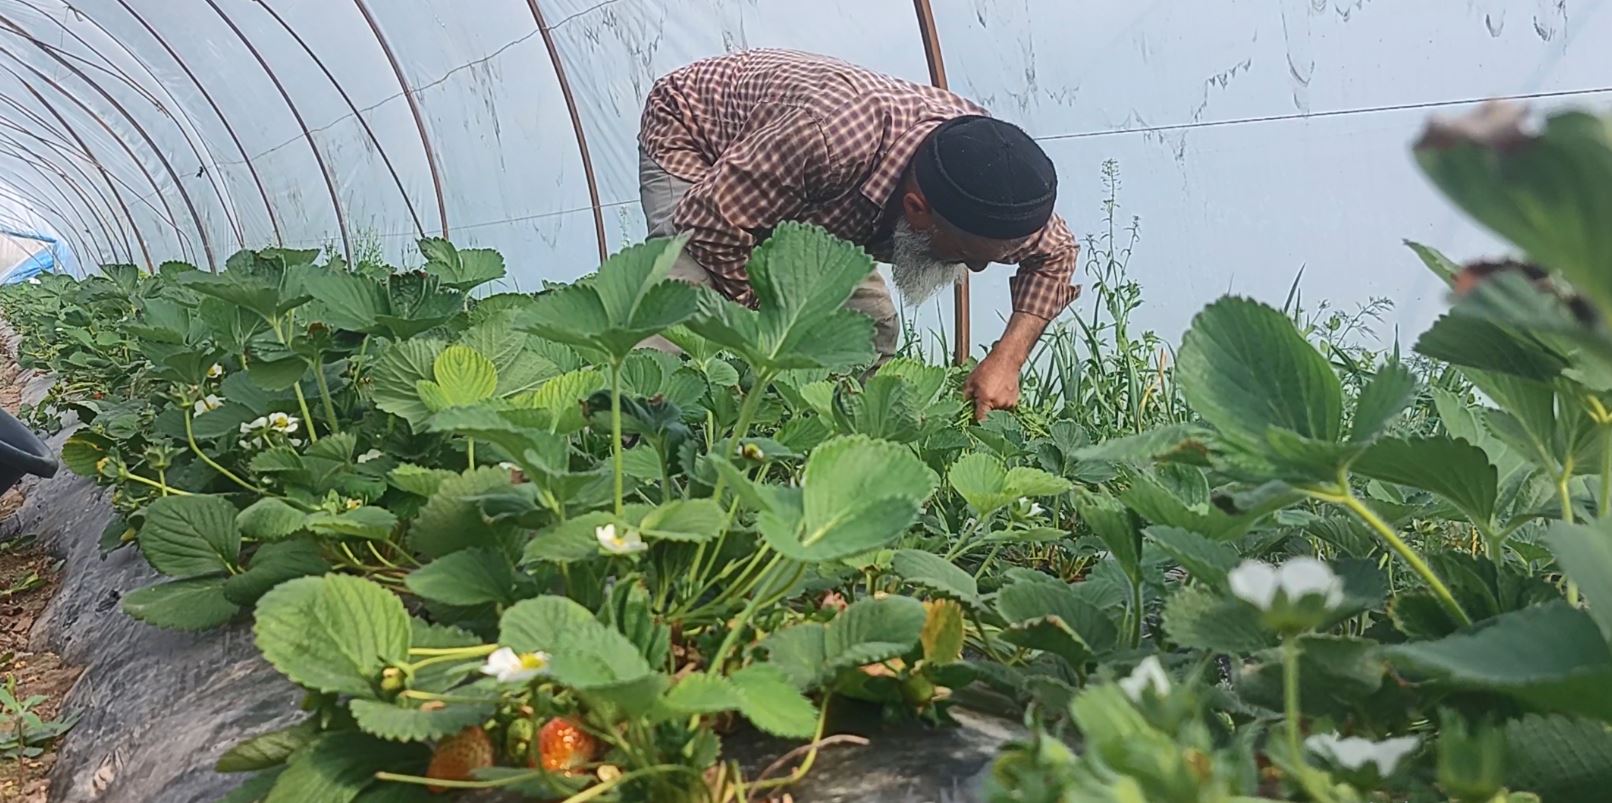 Фермер собирает клубнику в теплицах. Юг Таджикистана